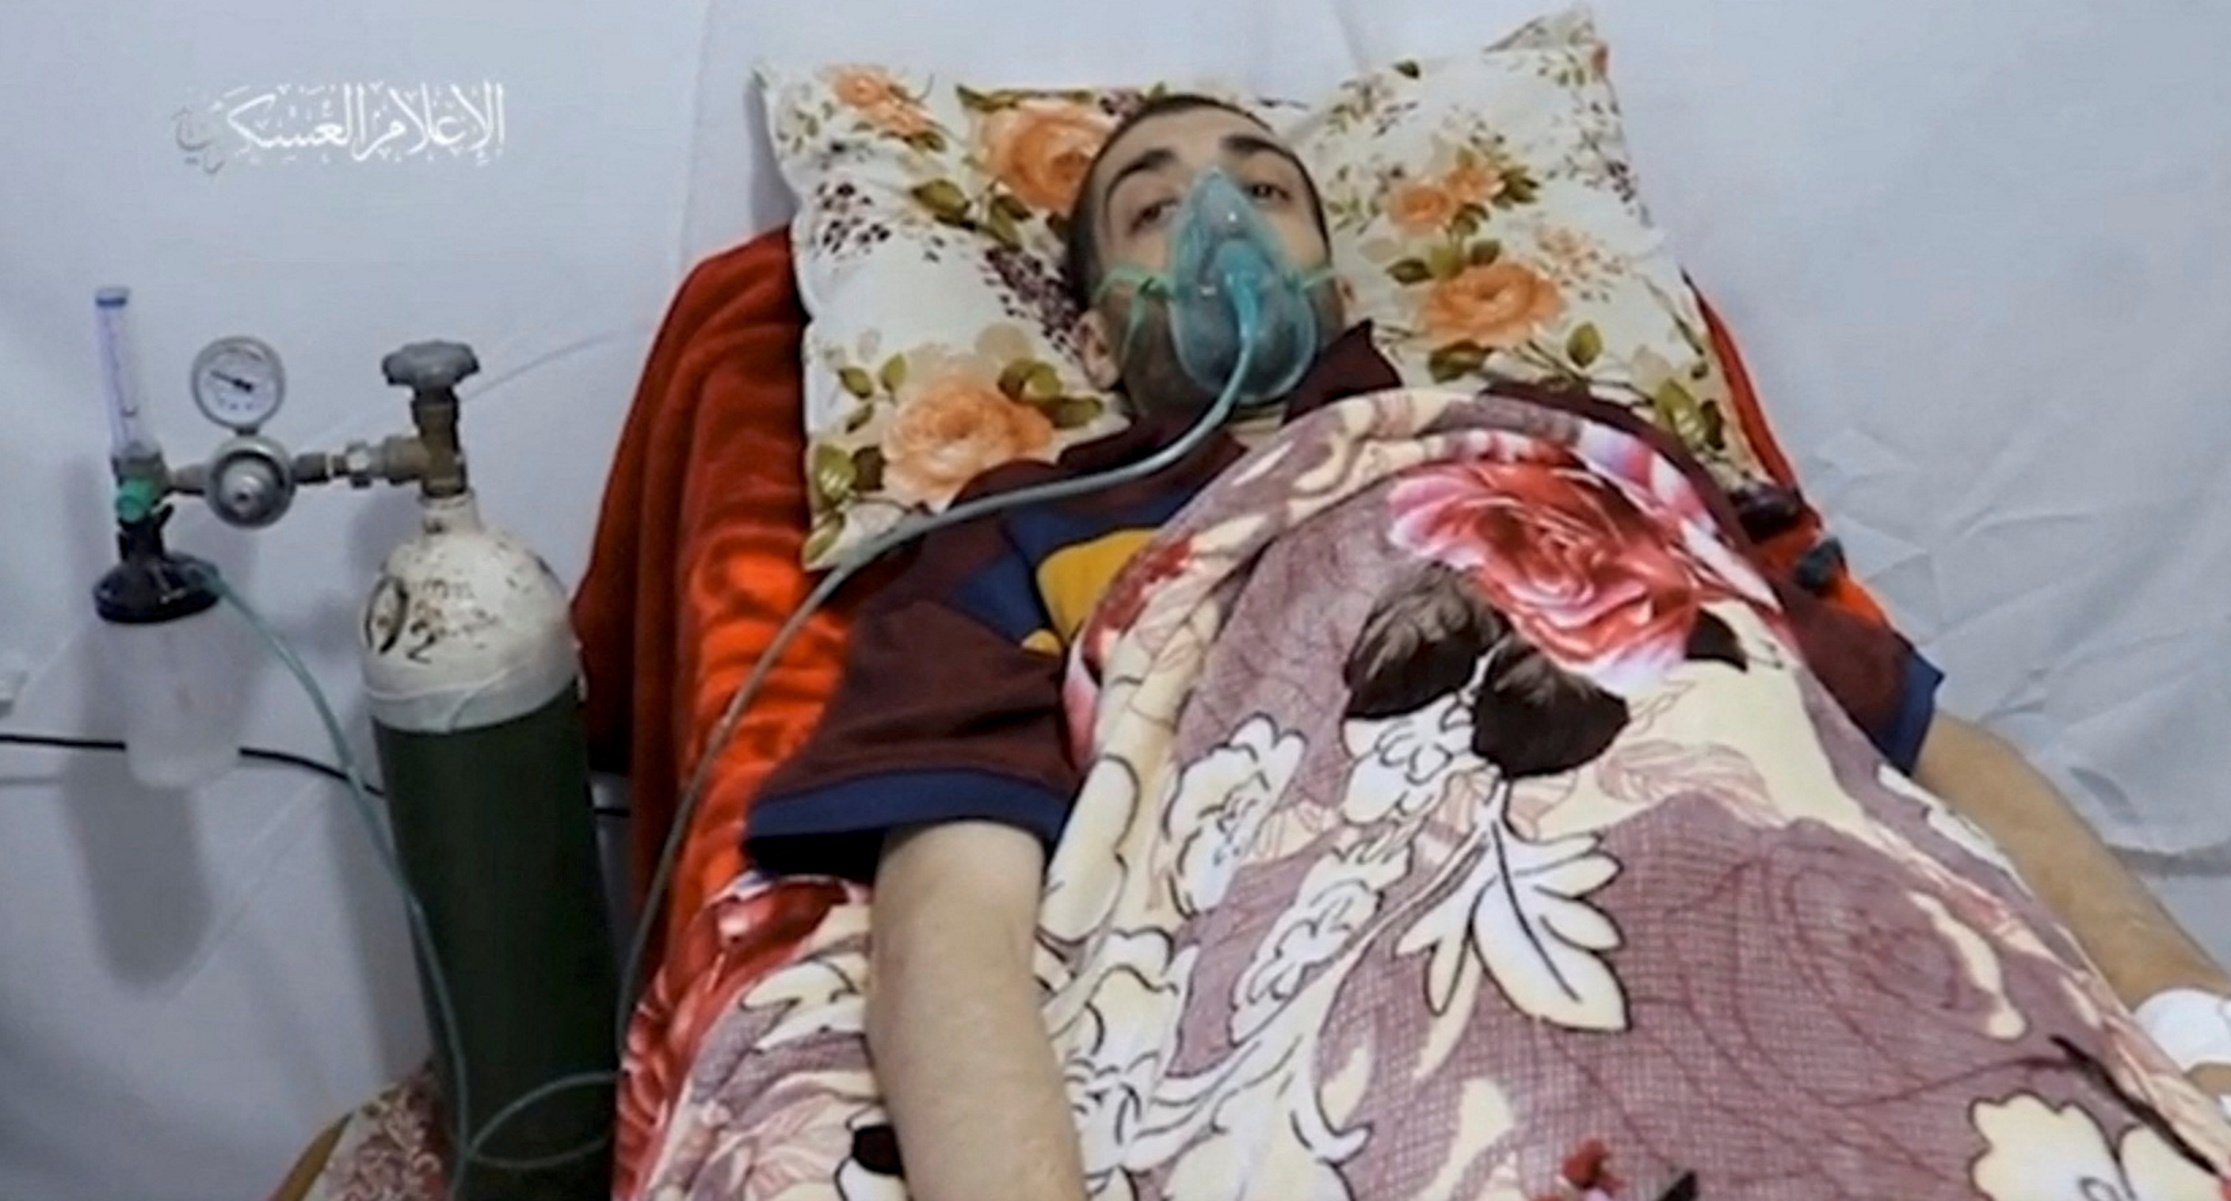 Βίντεο της Χαμάς με Ισραηλινό αιχμάλωτο από το 2015 – Ξαπλωμένος με μάσκα οξυγόνου στο πρόσωπο